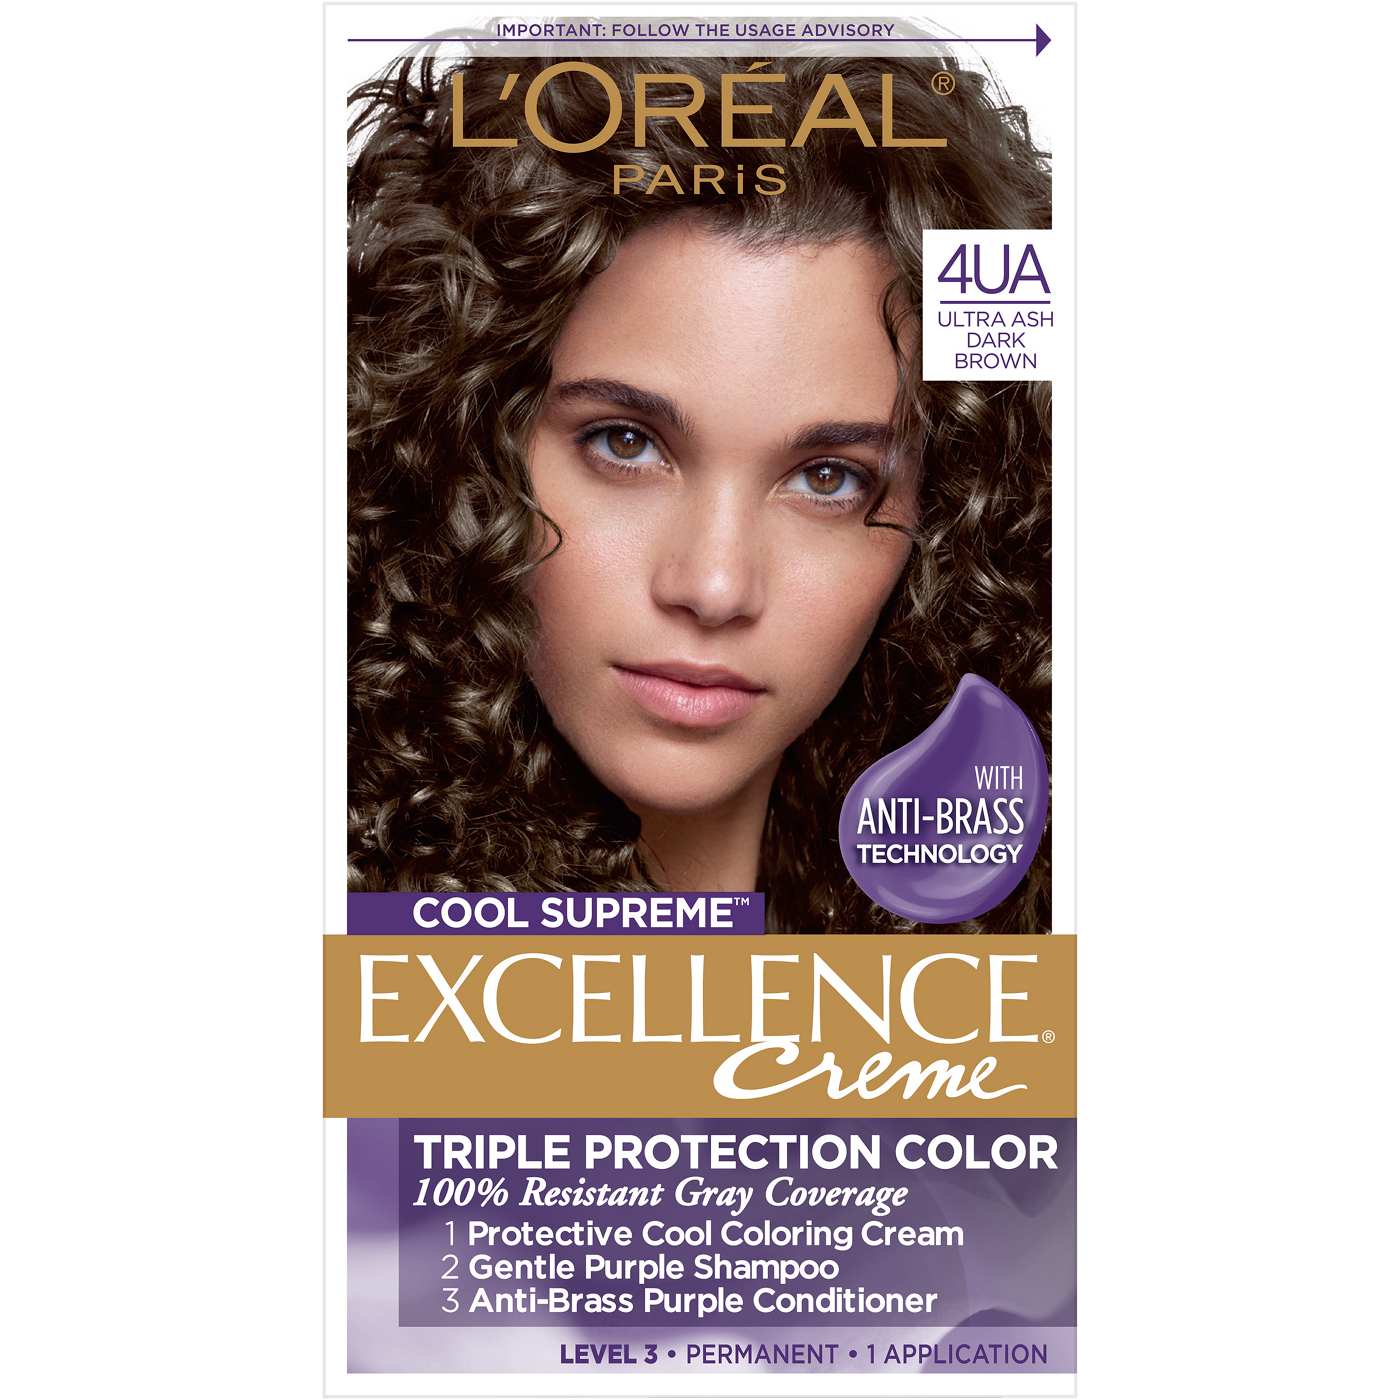 L'Oréal Paris Excellence Creme Cool Supreme Permanent Hair Color 4UA Ultra Ash Dark Brown; image 1 of 8